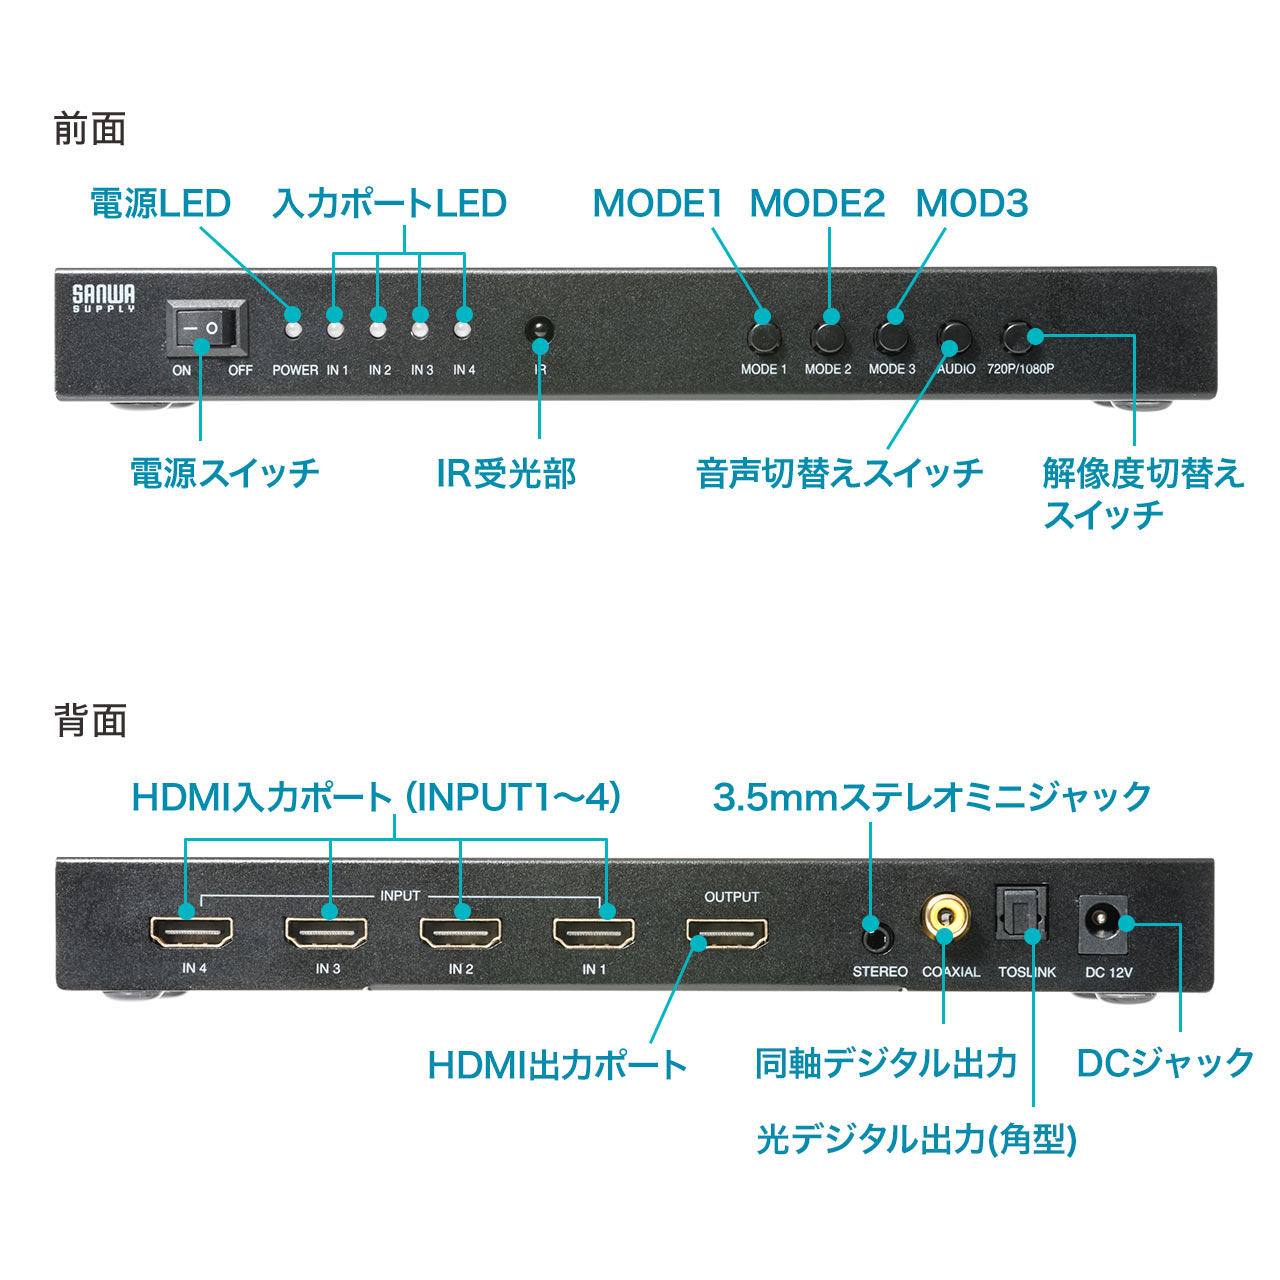 【楽天市場】HDMI画面分割切替器 4画面分割 マルチビューワー フルHD対応 4入力・1出力 オートスキャン機能搭載 リモコン ACアダプタ